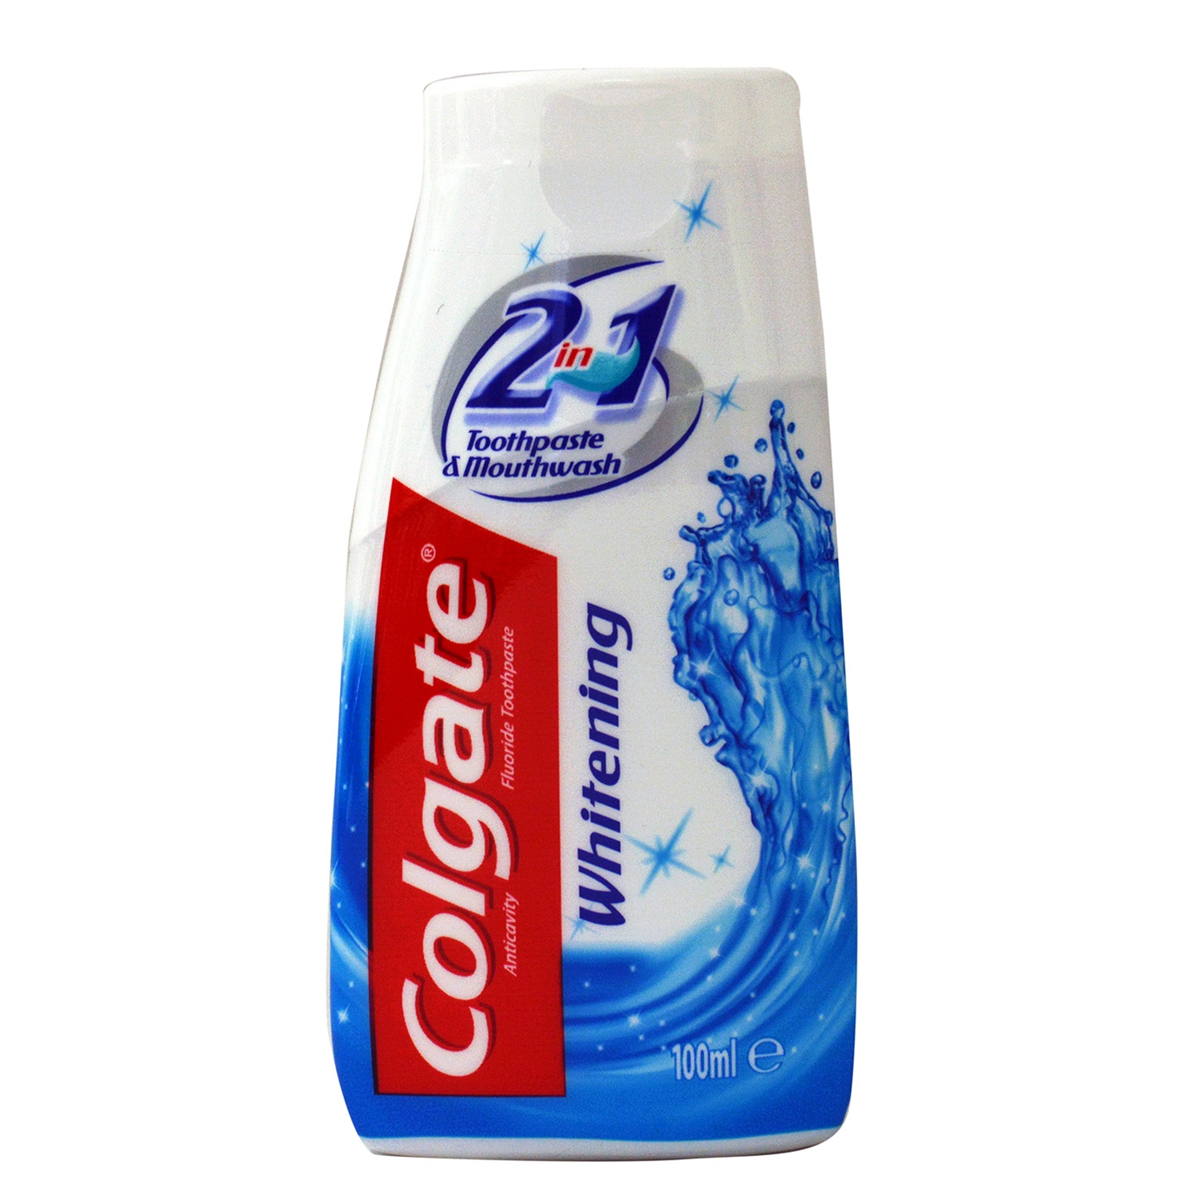 Skære af Valg personificering Colgate 2 in 1 Whitening Tandpasta og Mundskyl - 100 ml